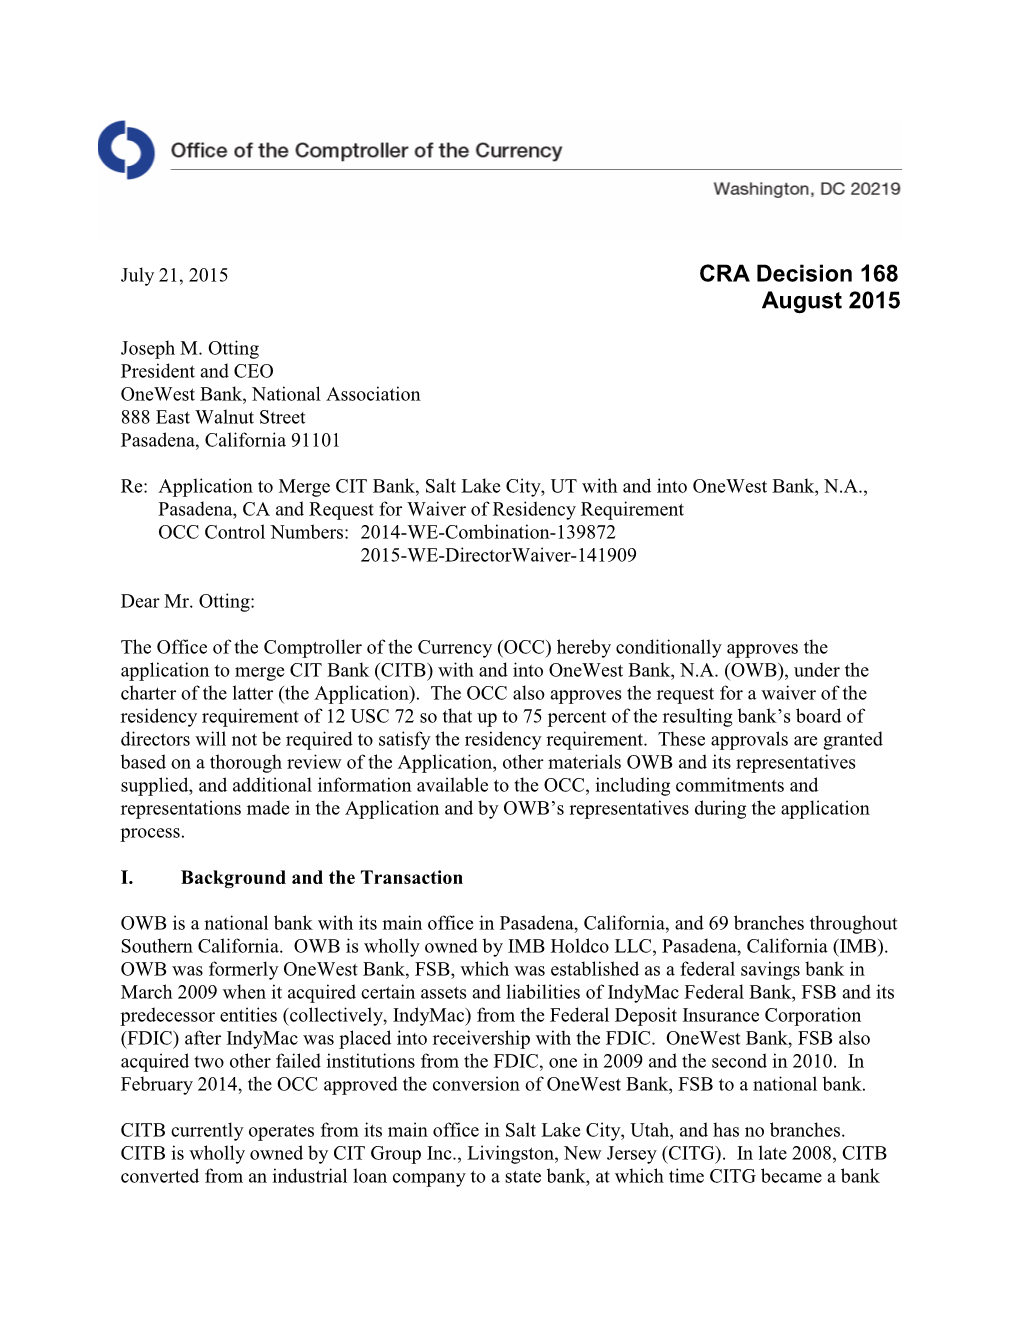 CRA Decision 168 August 2015